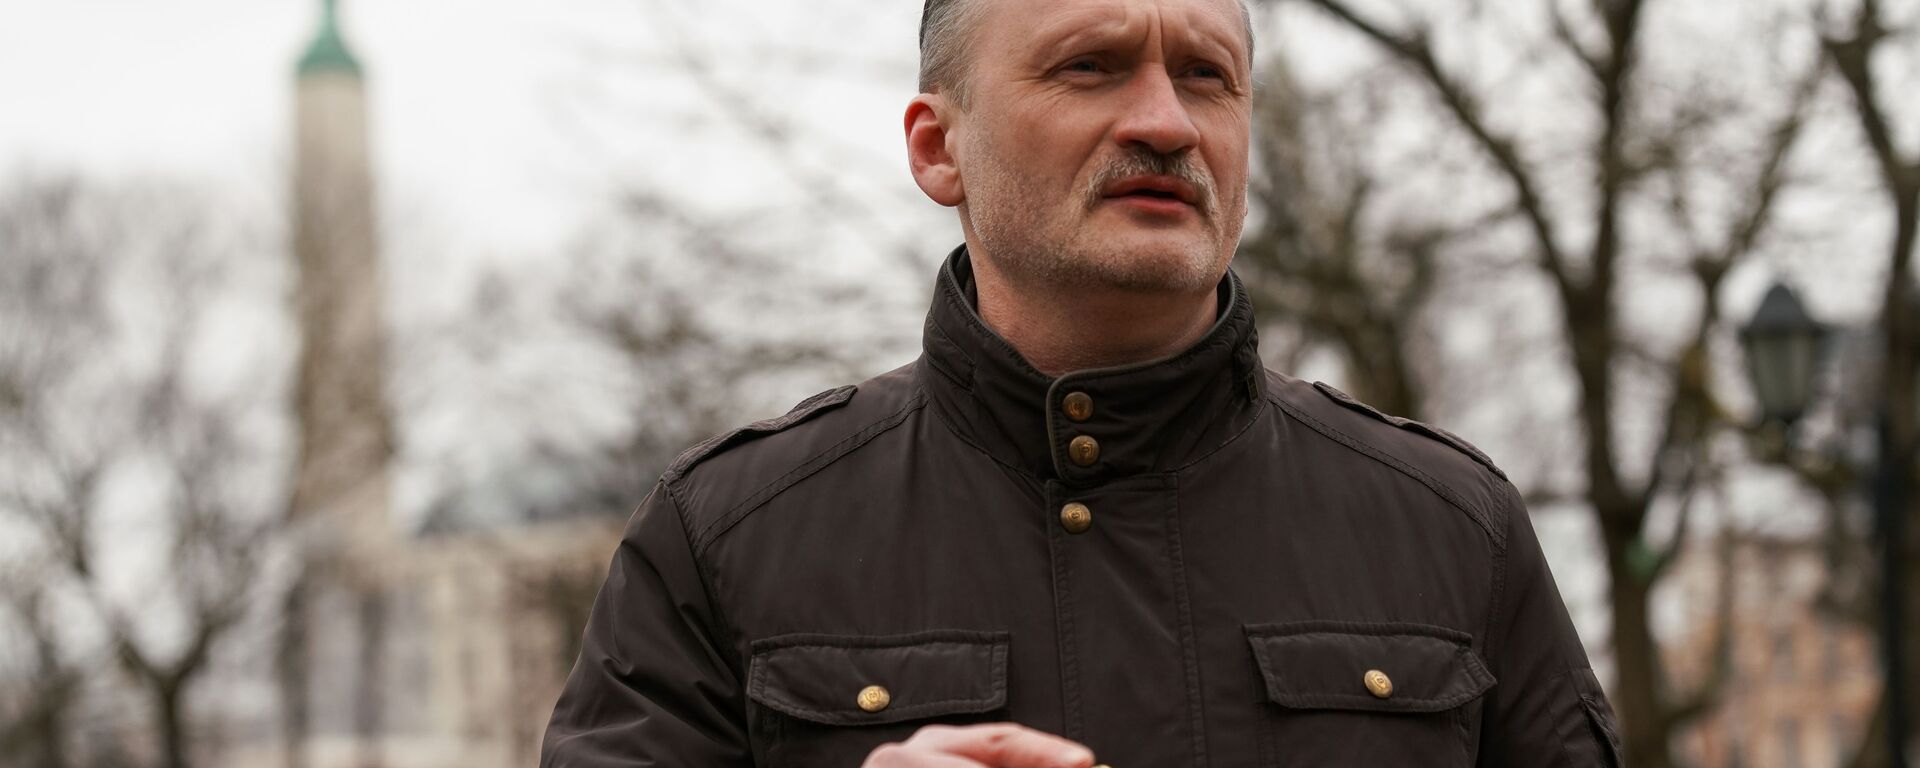 Сопредседатель РСЛ Мирослав Митрофанов (в центре) возле памятника Свободы в Риге 16 марта 2020 года - Sputnik Латвия, 1920, 13.03.2021